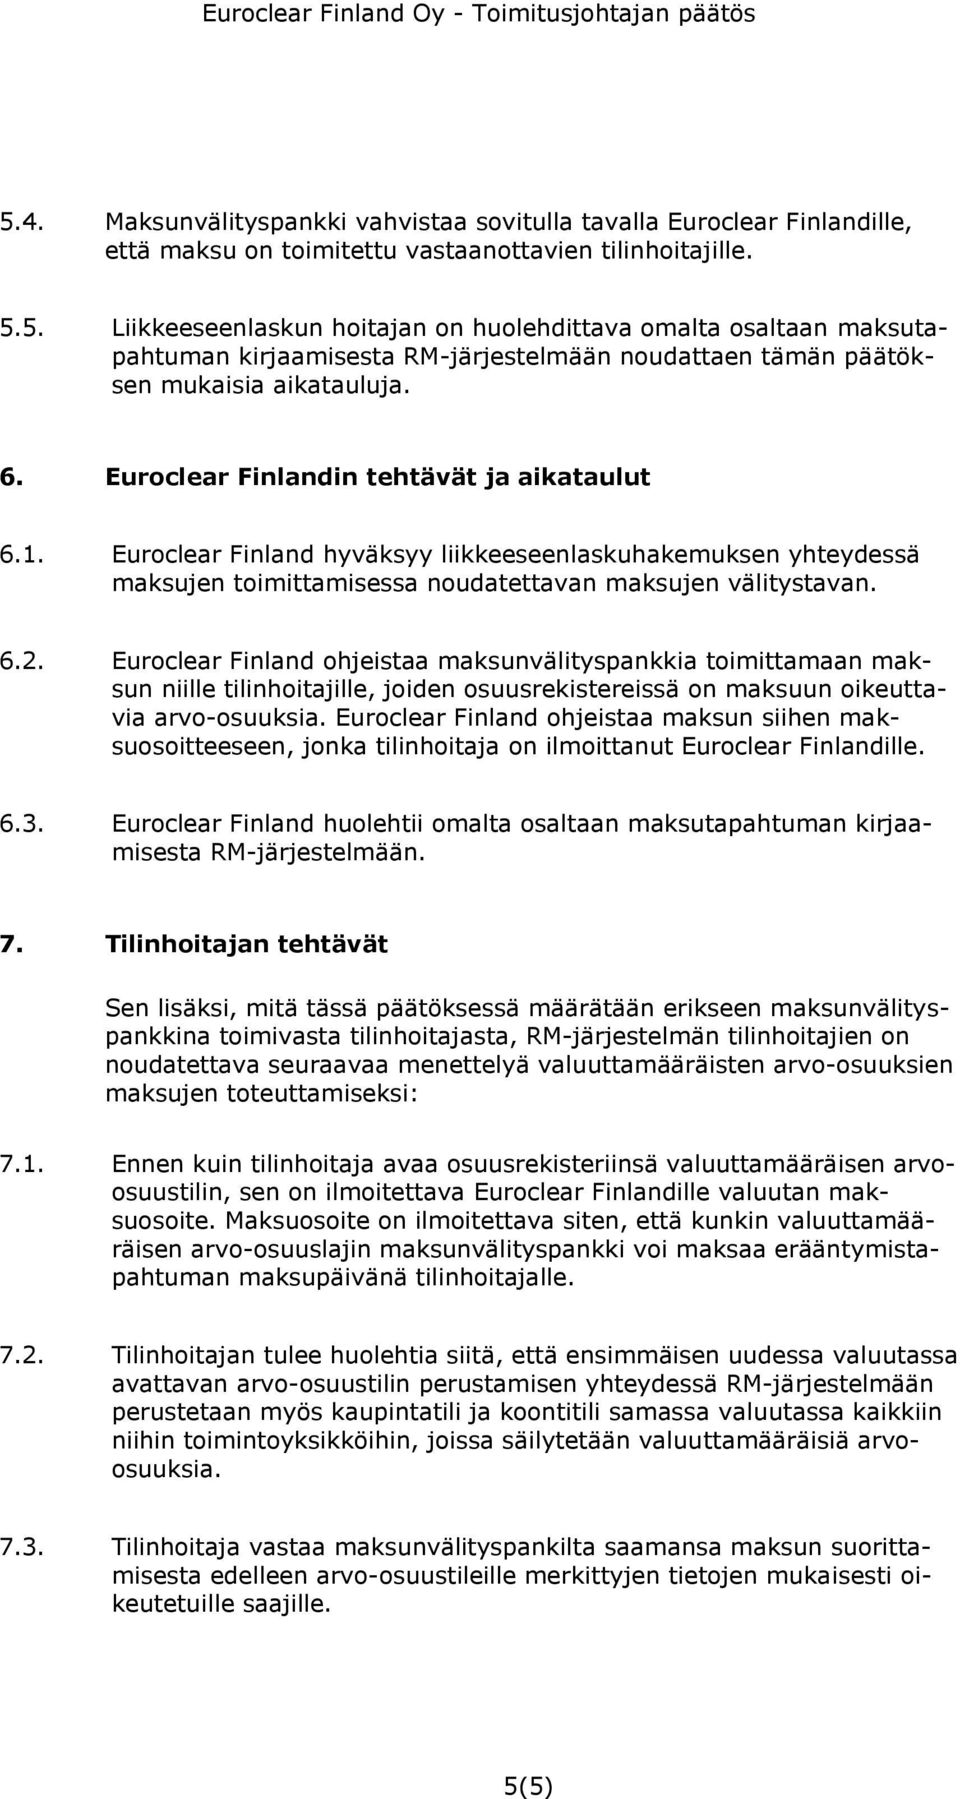 Euroclear Finland ohjeistaa maksunvälityspankkia toimittamaan maksun niille tilinhoitajille, joiden osuusrekistereissä on maksuun oikeuttavia arvo-osuuksia.